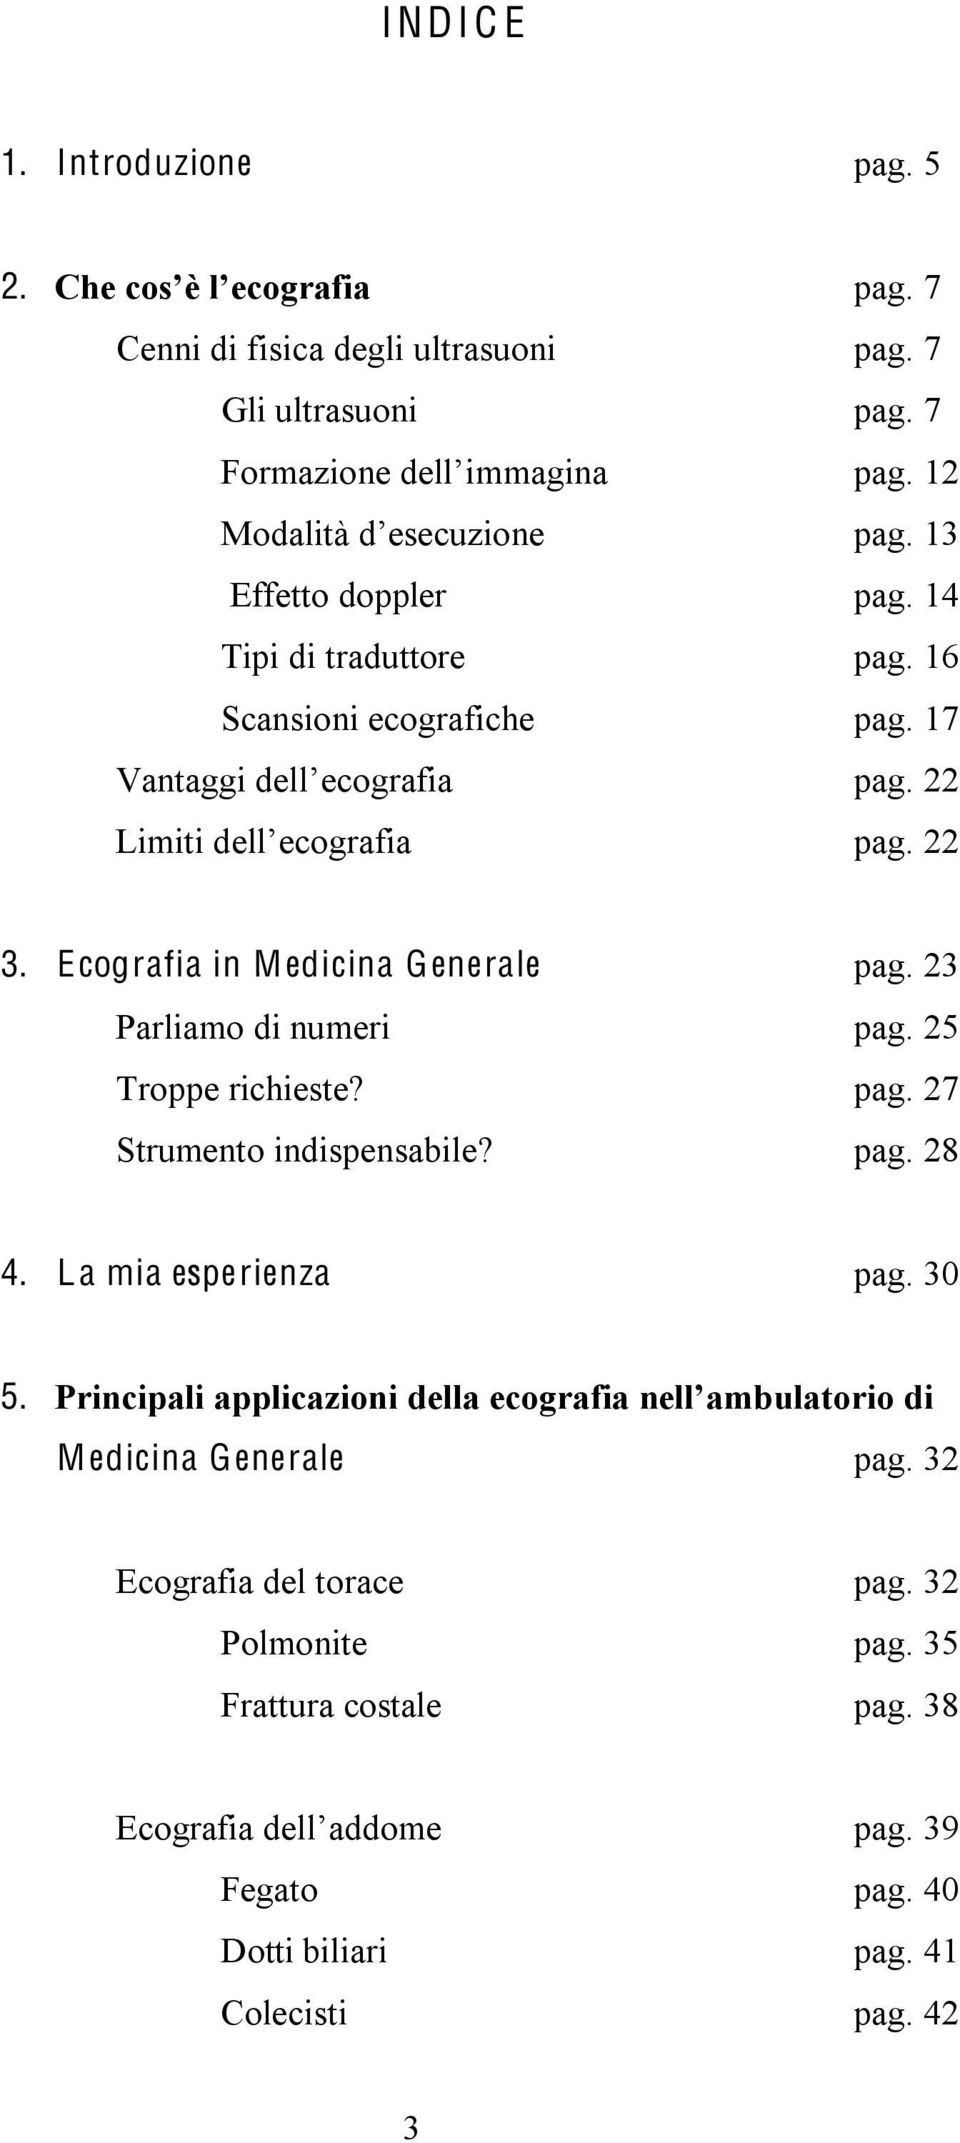 Ecografia in Medicina Generale pag. 23 Parliamo di numeri pag. 25 Troppe richieste? pag. 27 Strumento indispensabile? pag. 28 4.